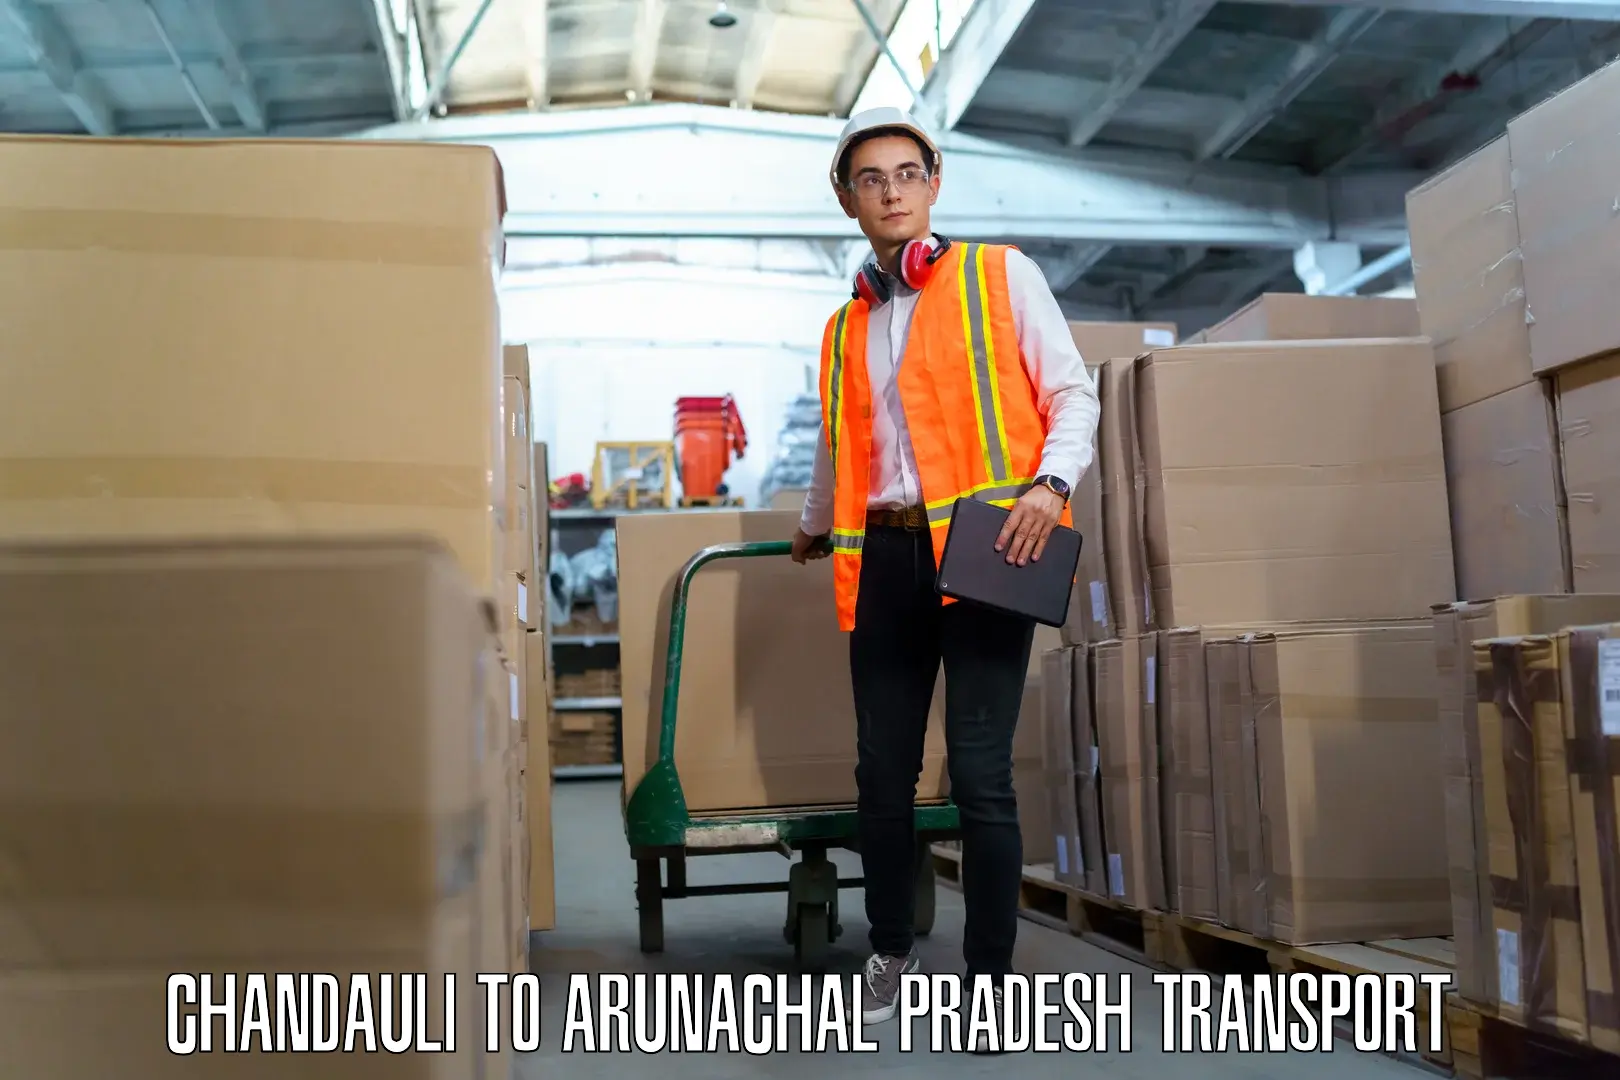 Pick up transport service Chandauli to Deomali